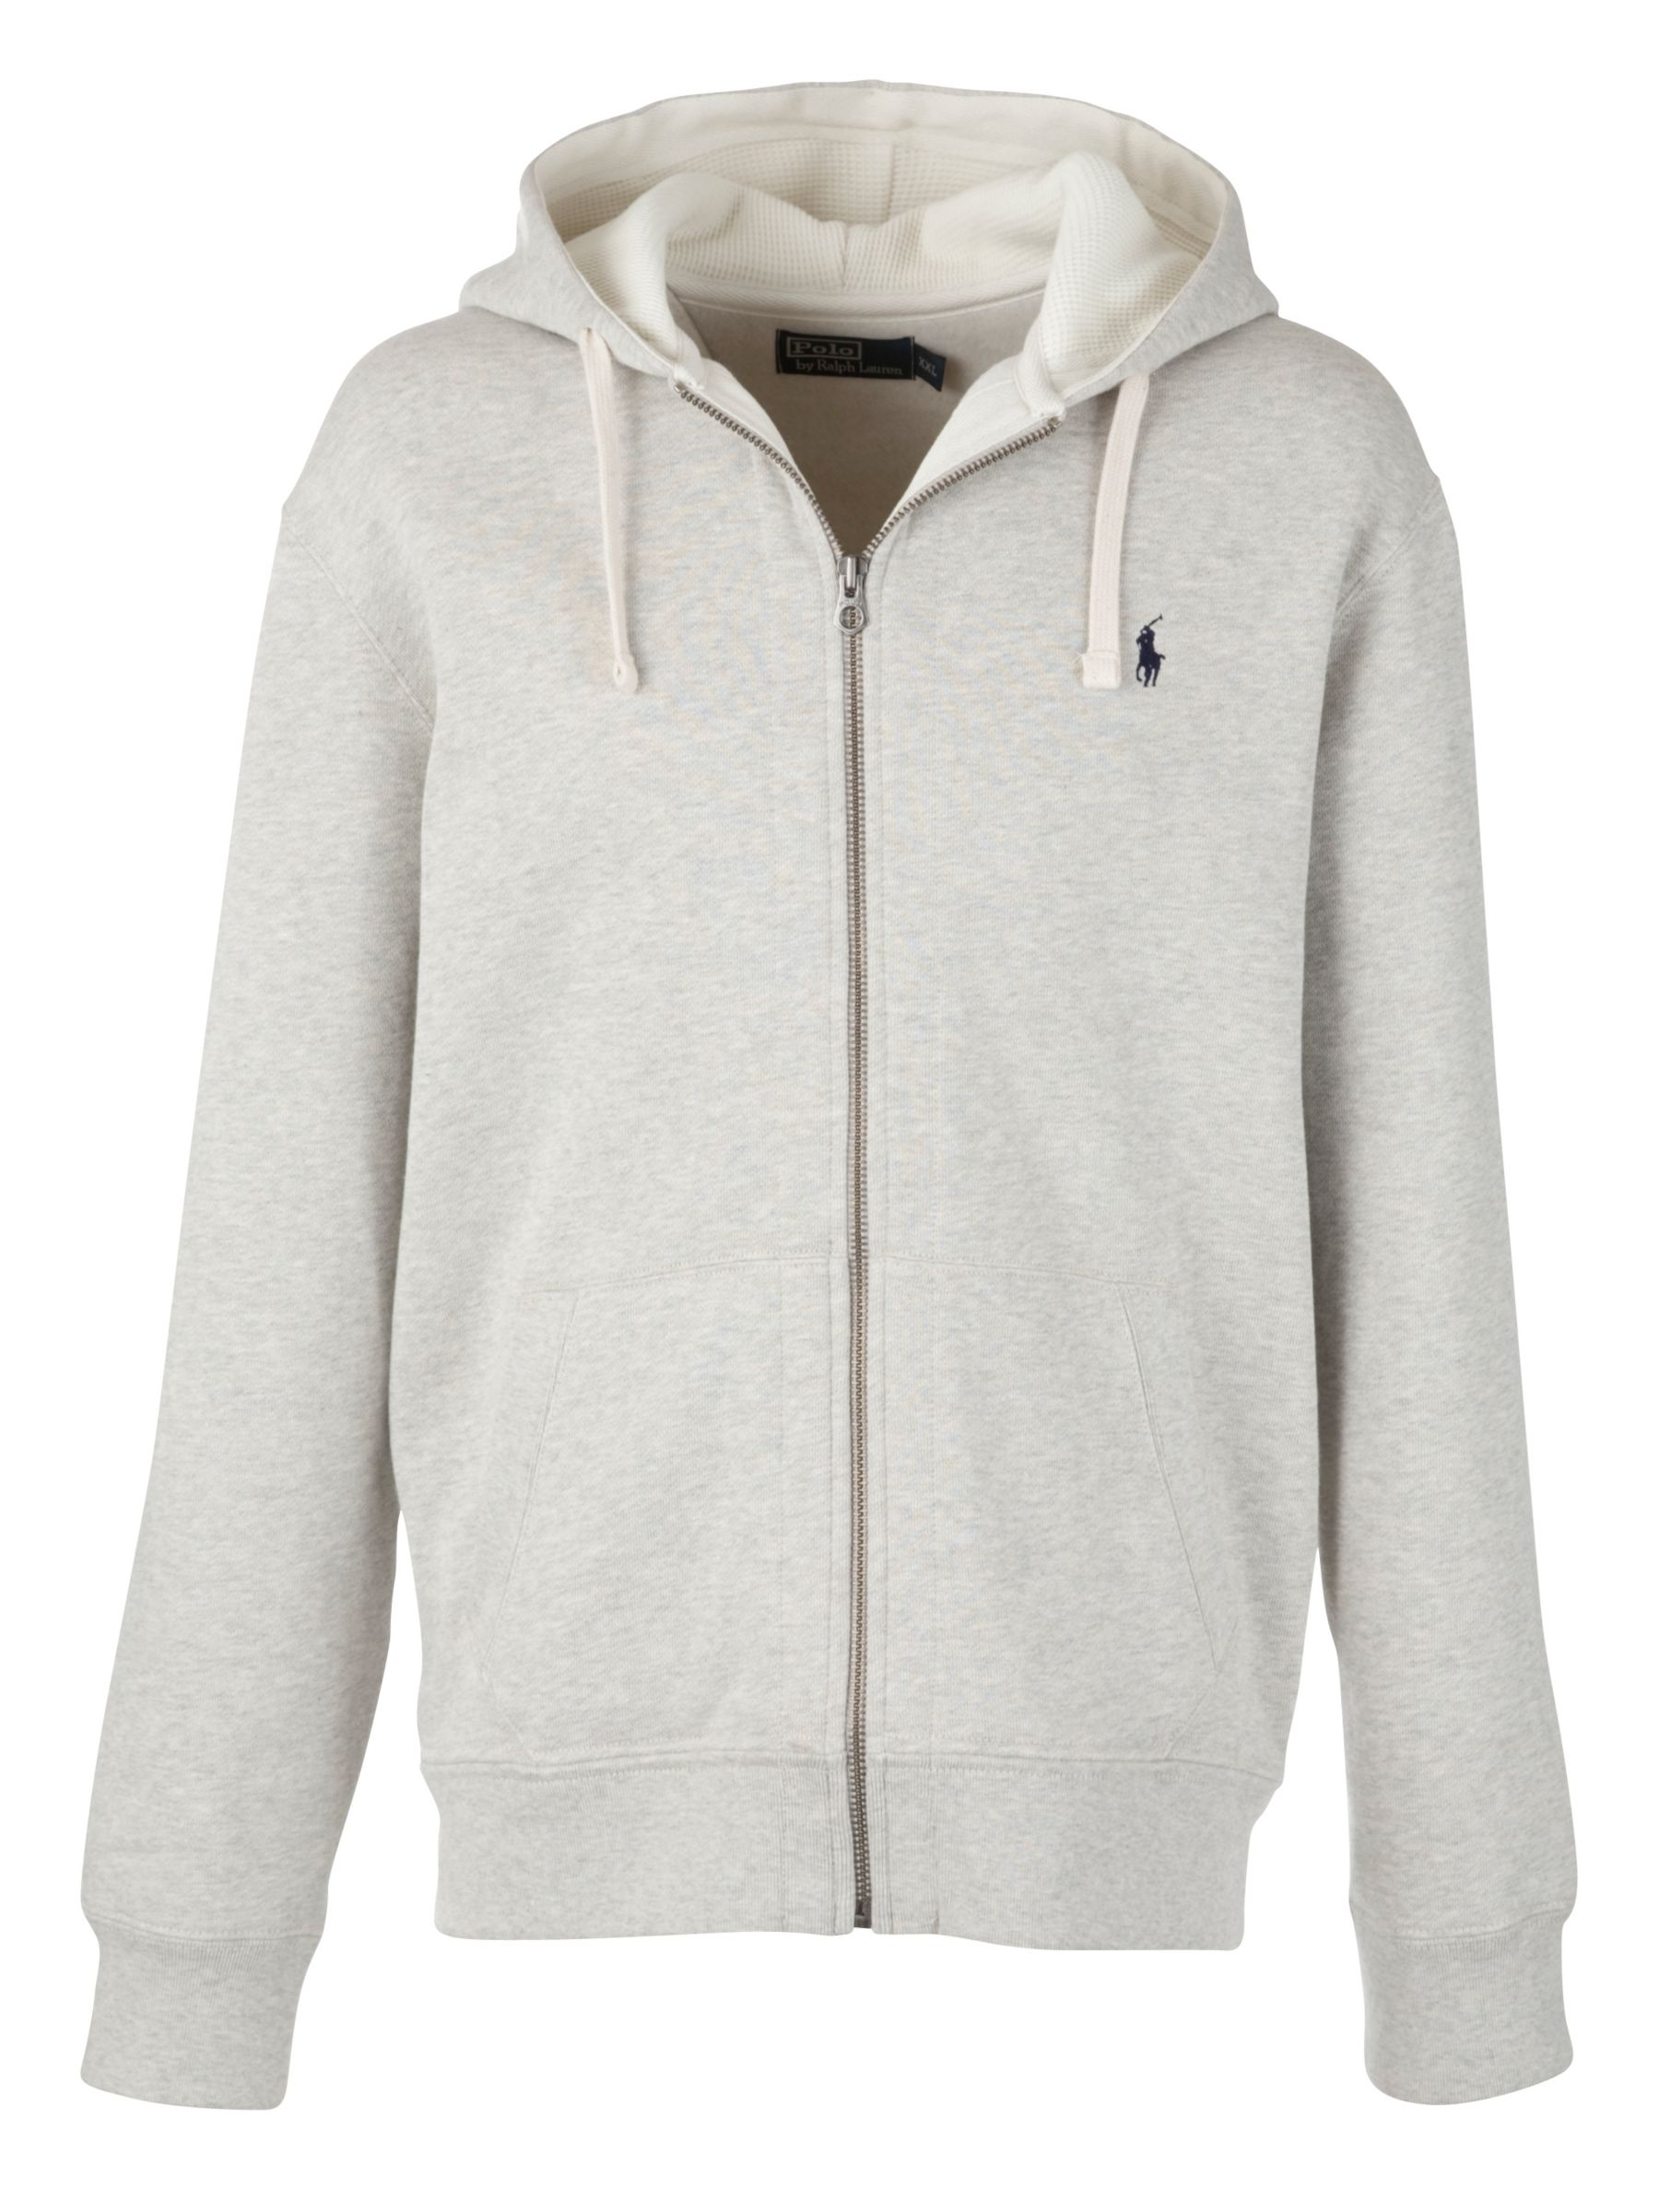 ralph lauren zip up hoodie grey